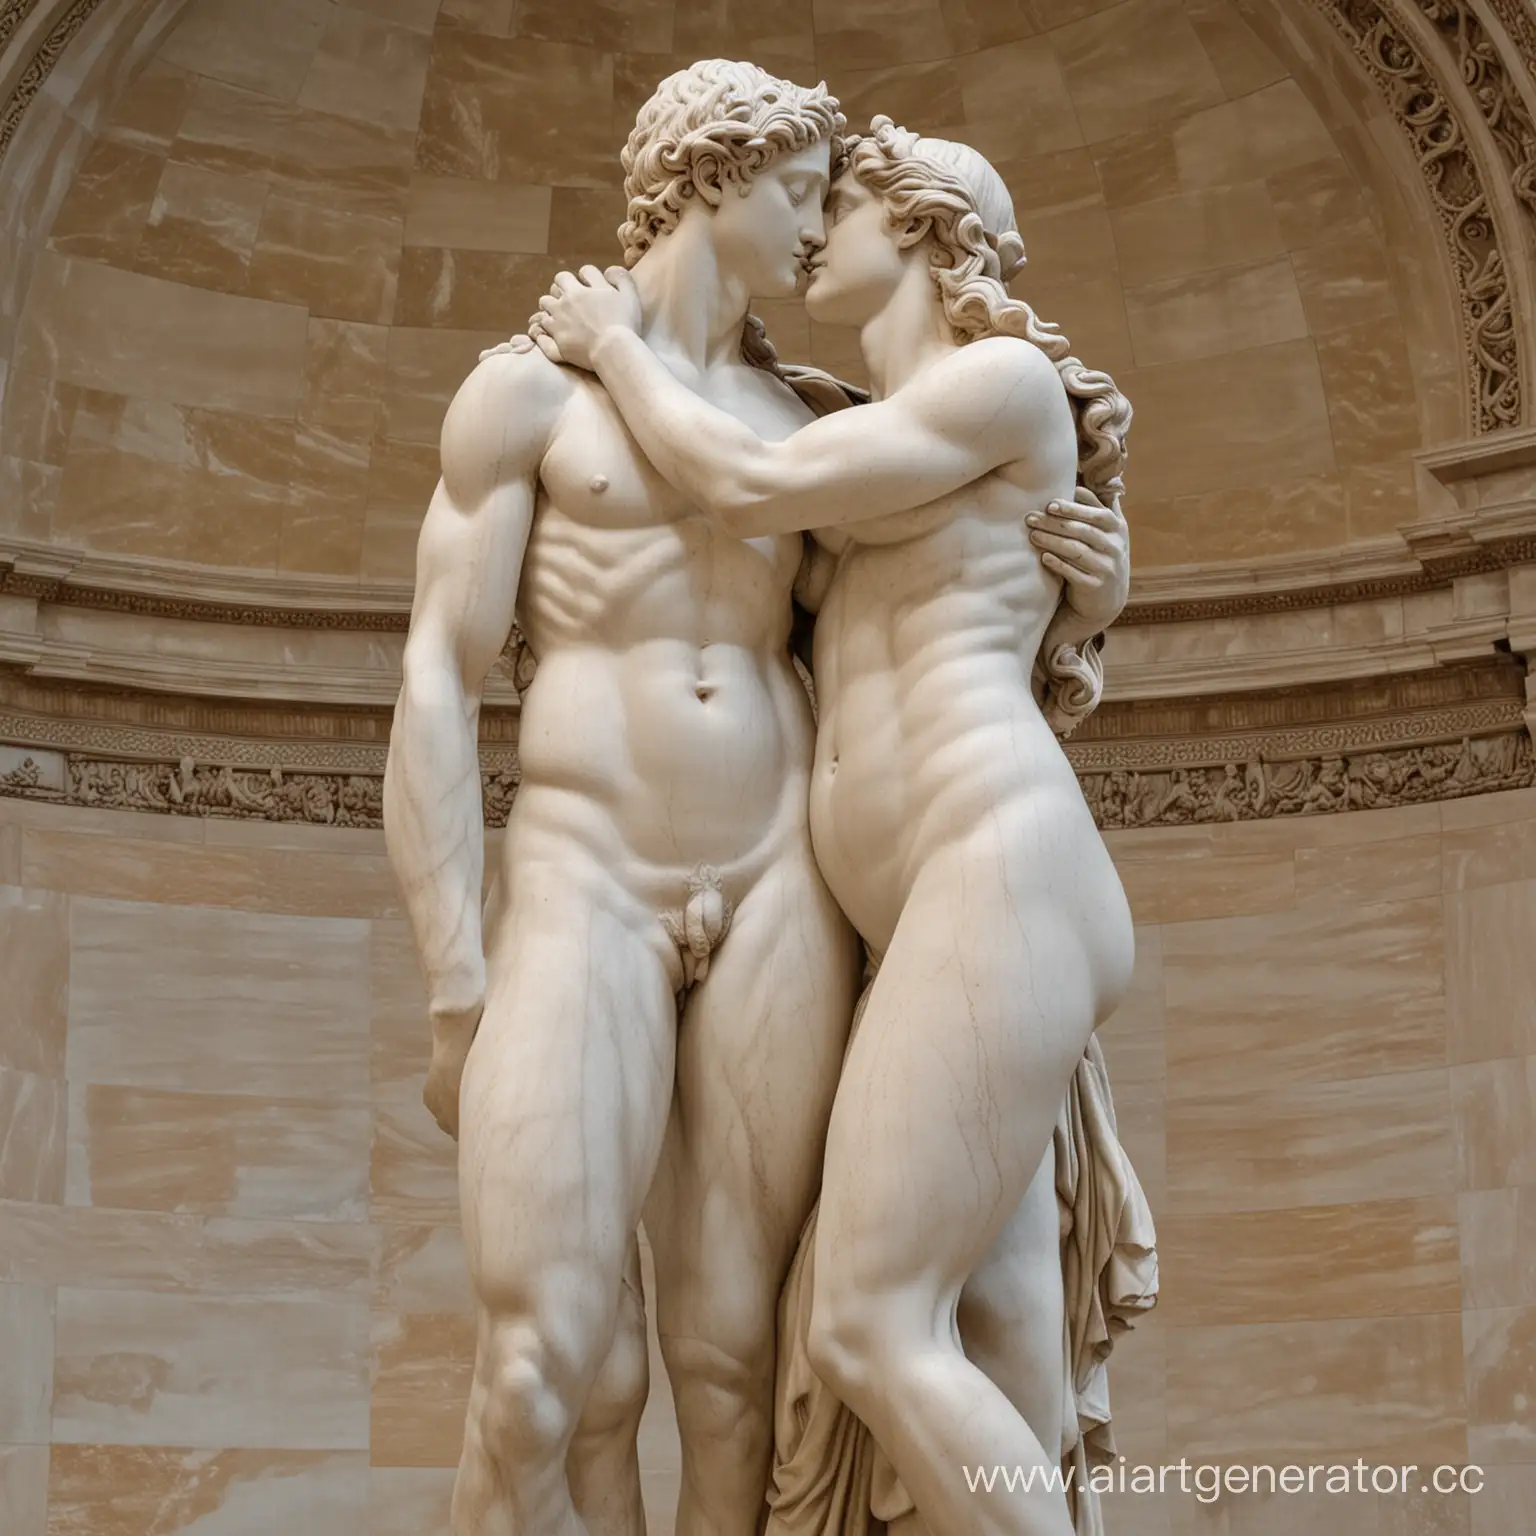 Скульптура Венеры Милоской и Давида Микеланджело вместе, они обнимаются как любовники. Две скульптуры целуются